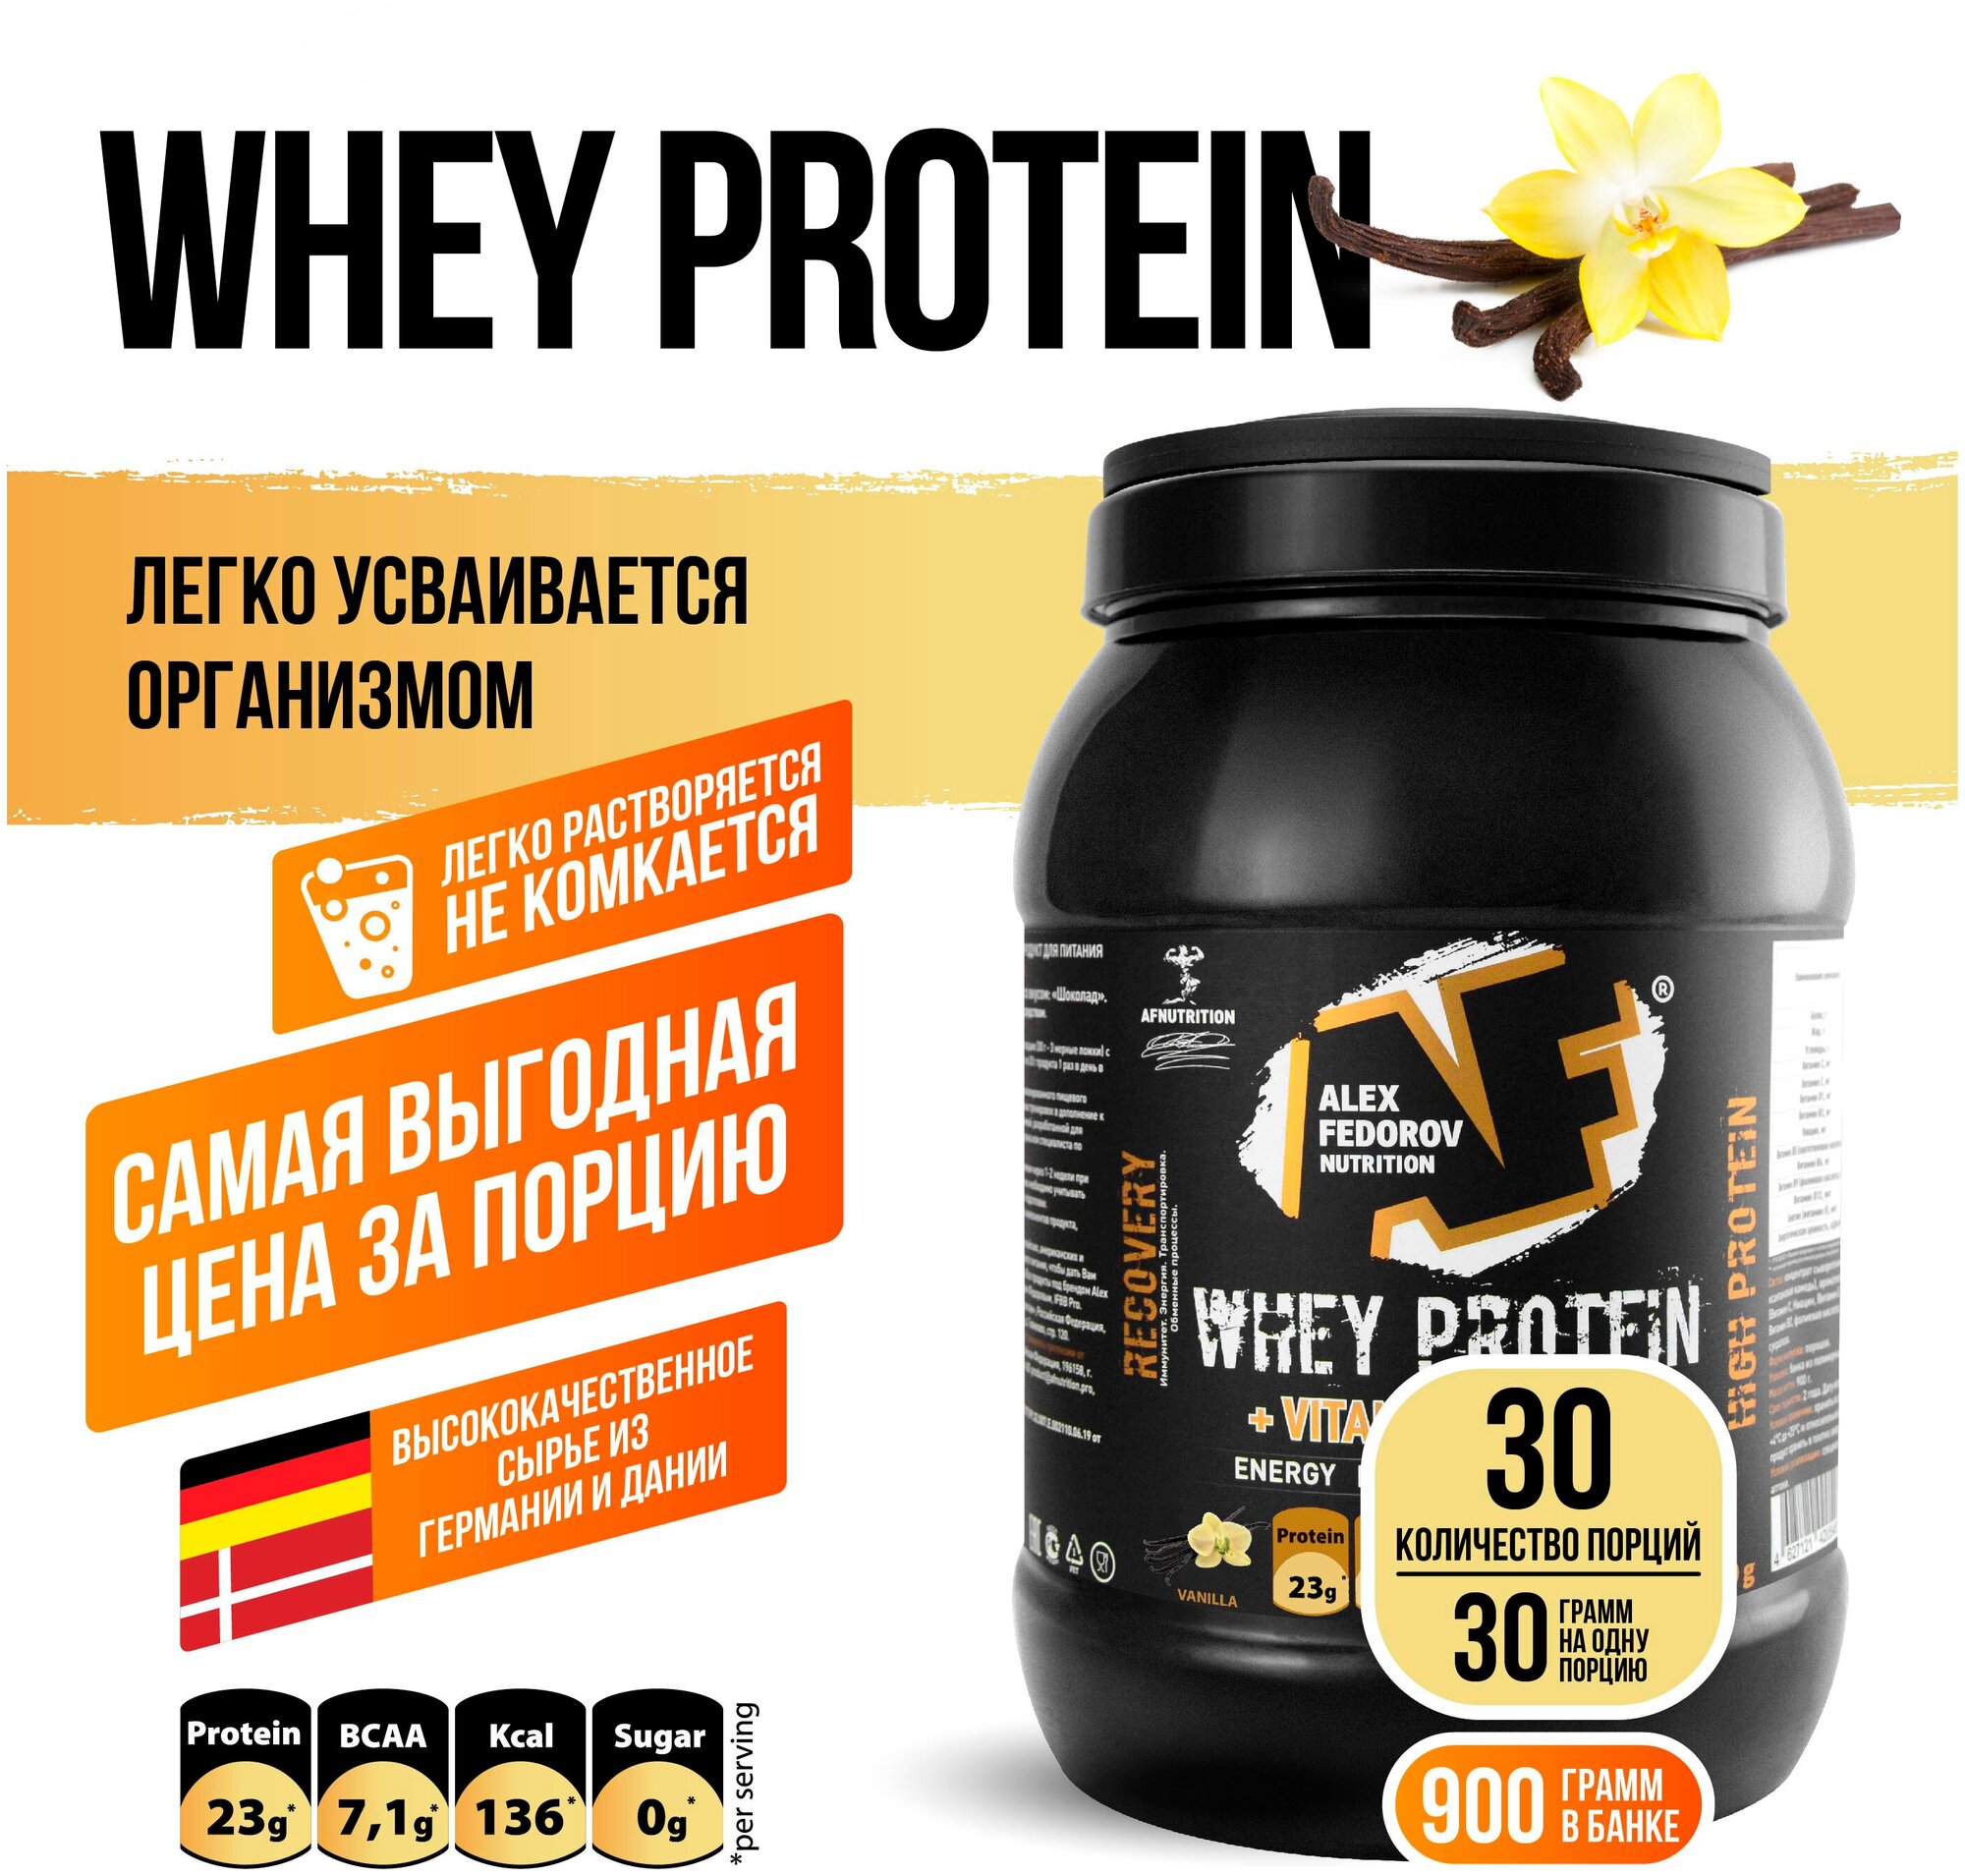 Протеин, Protein, Alex Fedorov Nutrition "Whey Protein", протеин сывороточный, ваниль, 900 г